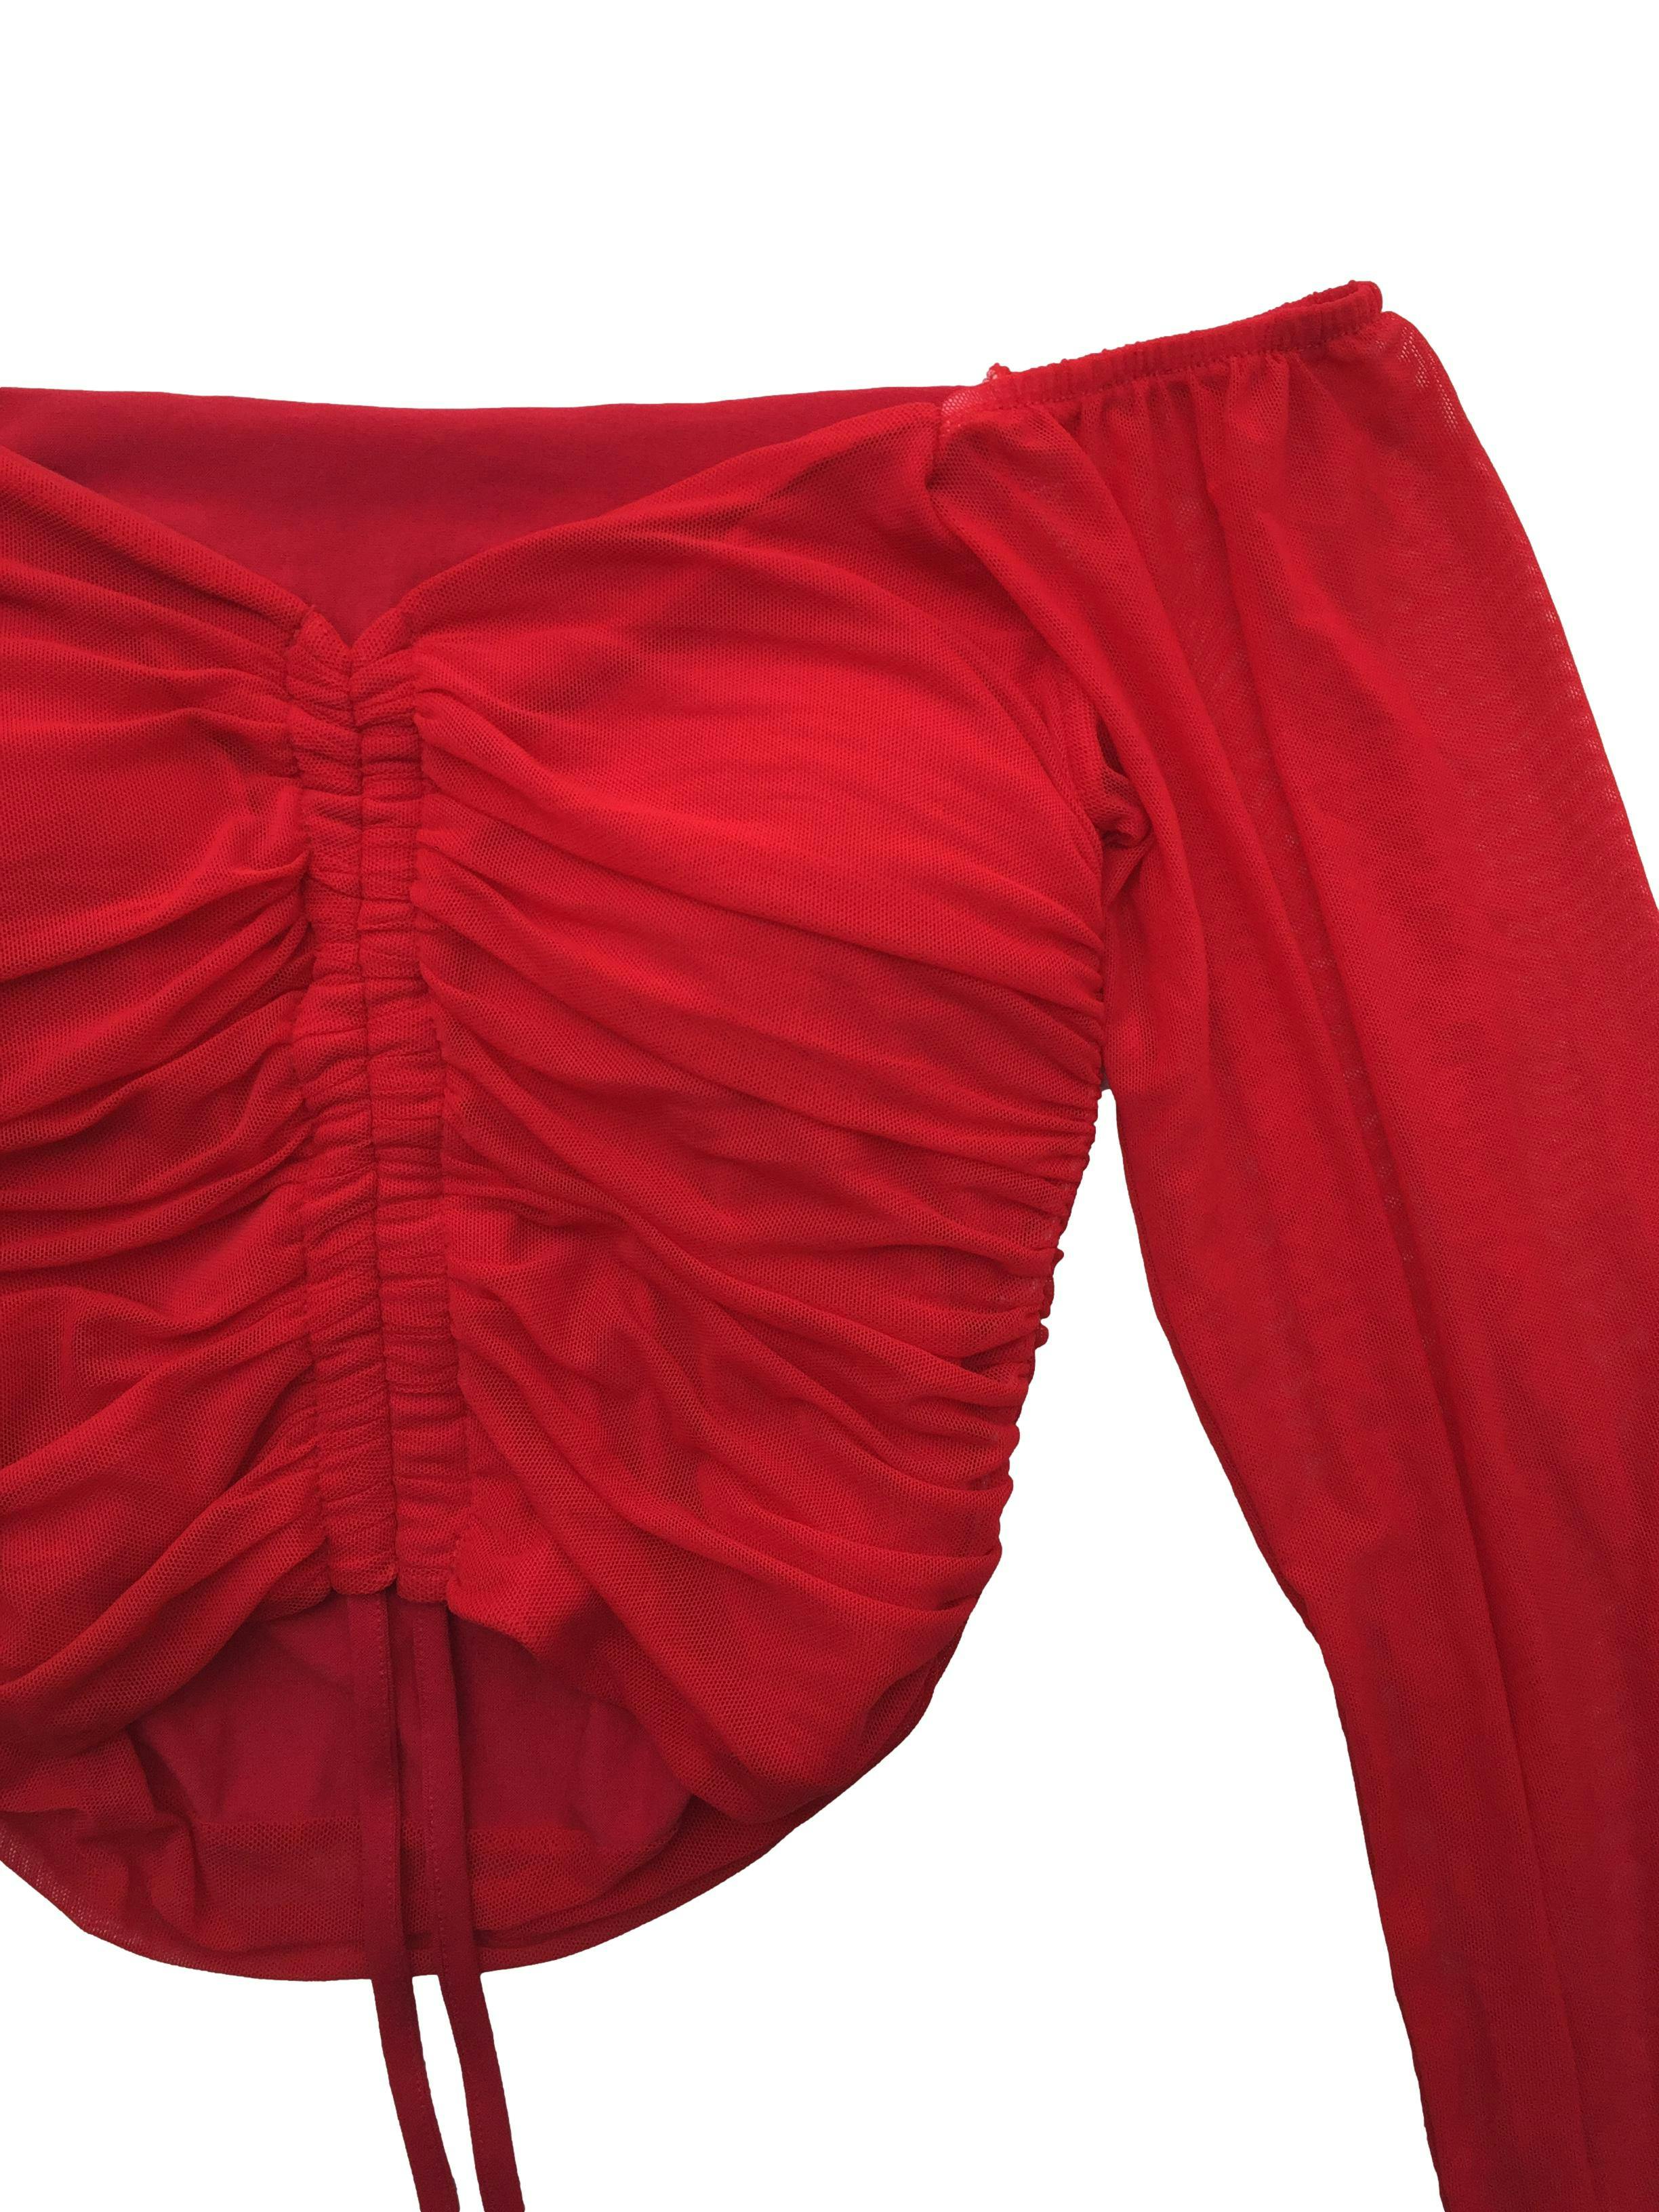 Top rojo off-shoulder de mesh con forro, copas y fruncido en pecho regulable. Busto 70cm sin estirar, Largo 30cm.